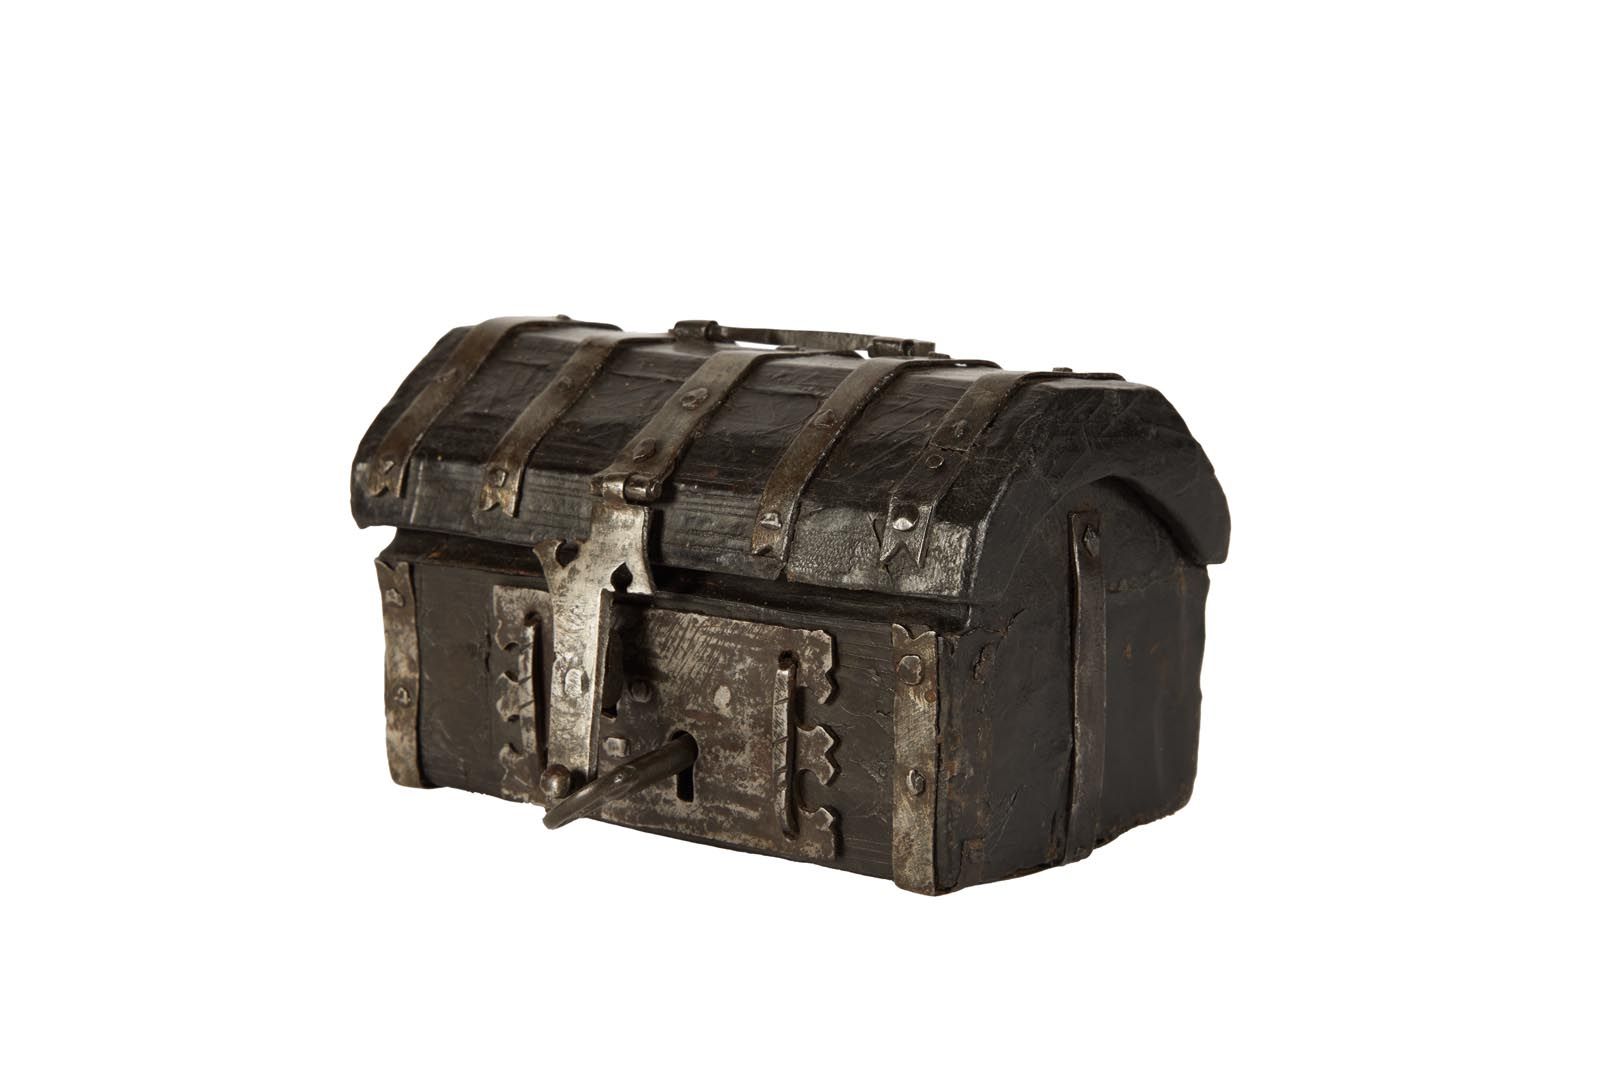 Null 250 小型皮包铁边柜，带锁扣。
16 世纪
使用状况
9 x 15 x 9 厘米